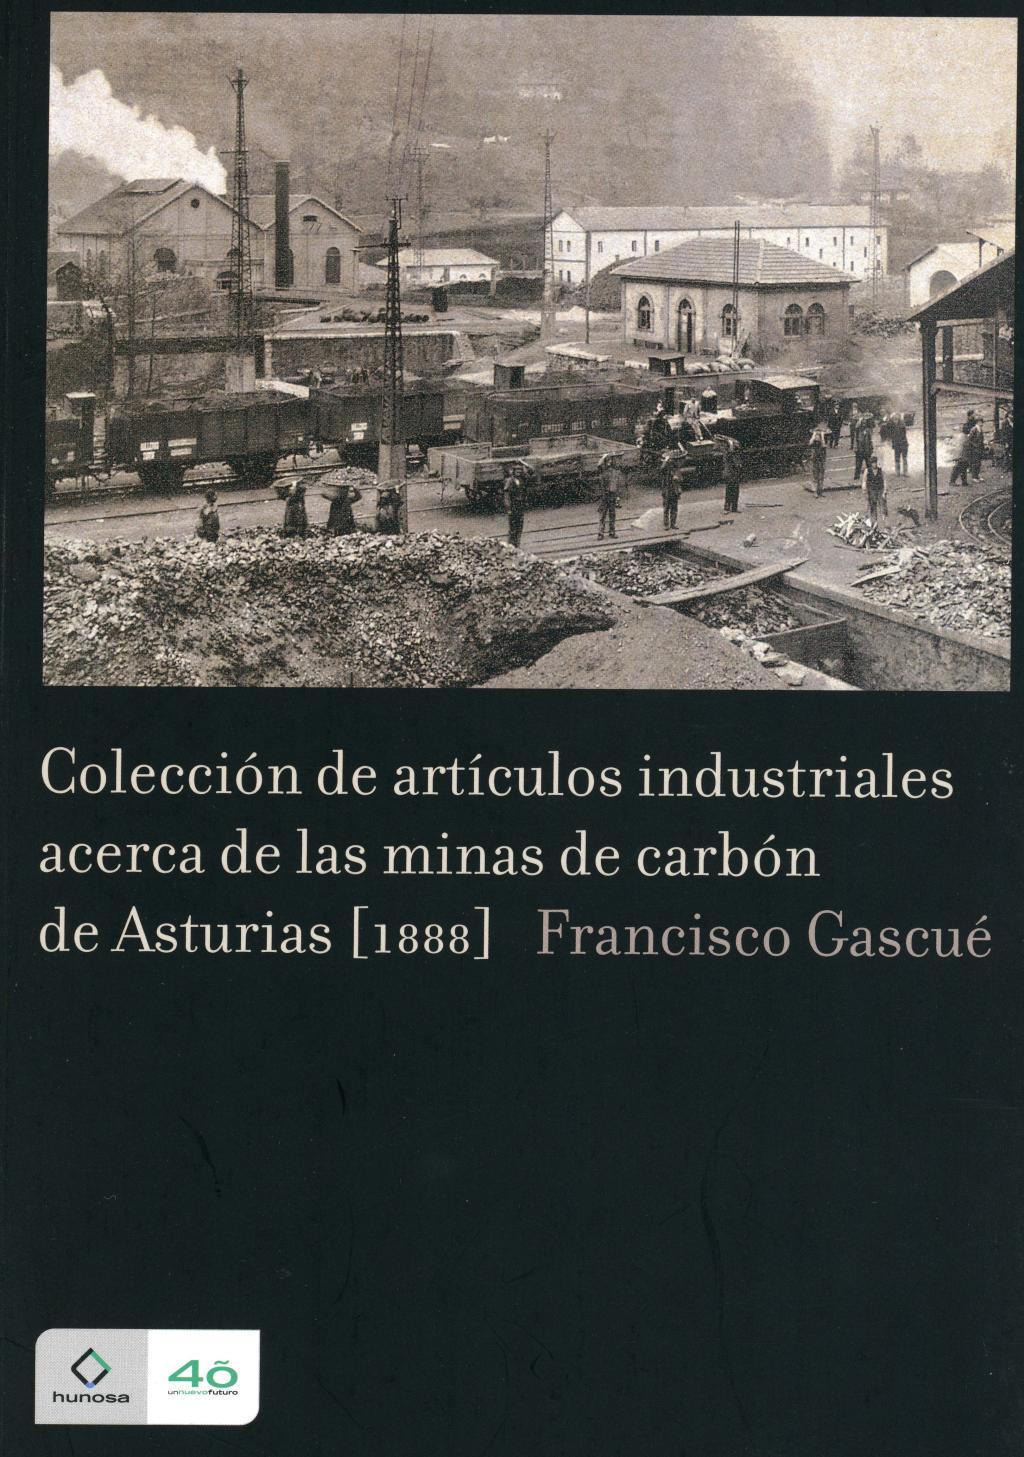 Libros Colección de artículos industriales acerca de las minas de carbón de Asturias Archivo Histórico Hunosa Pozo Fondón